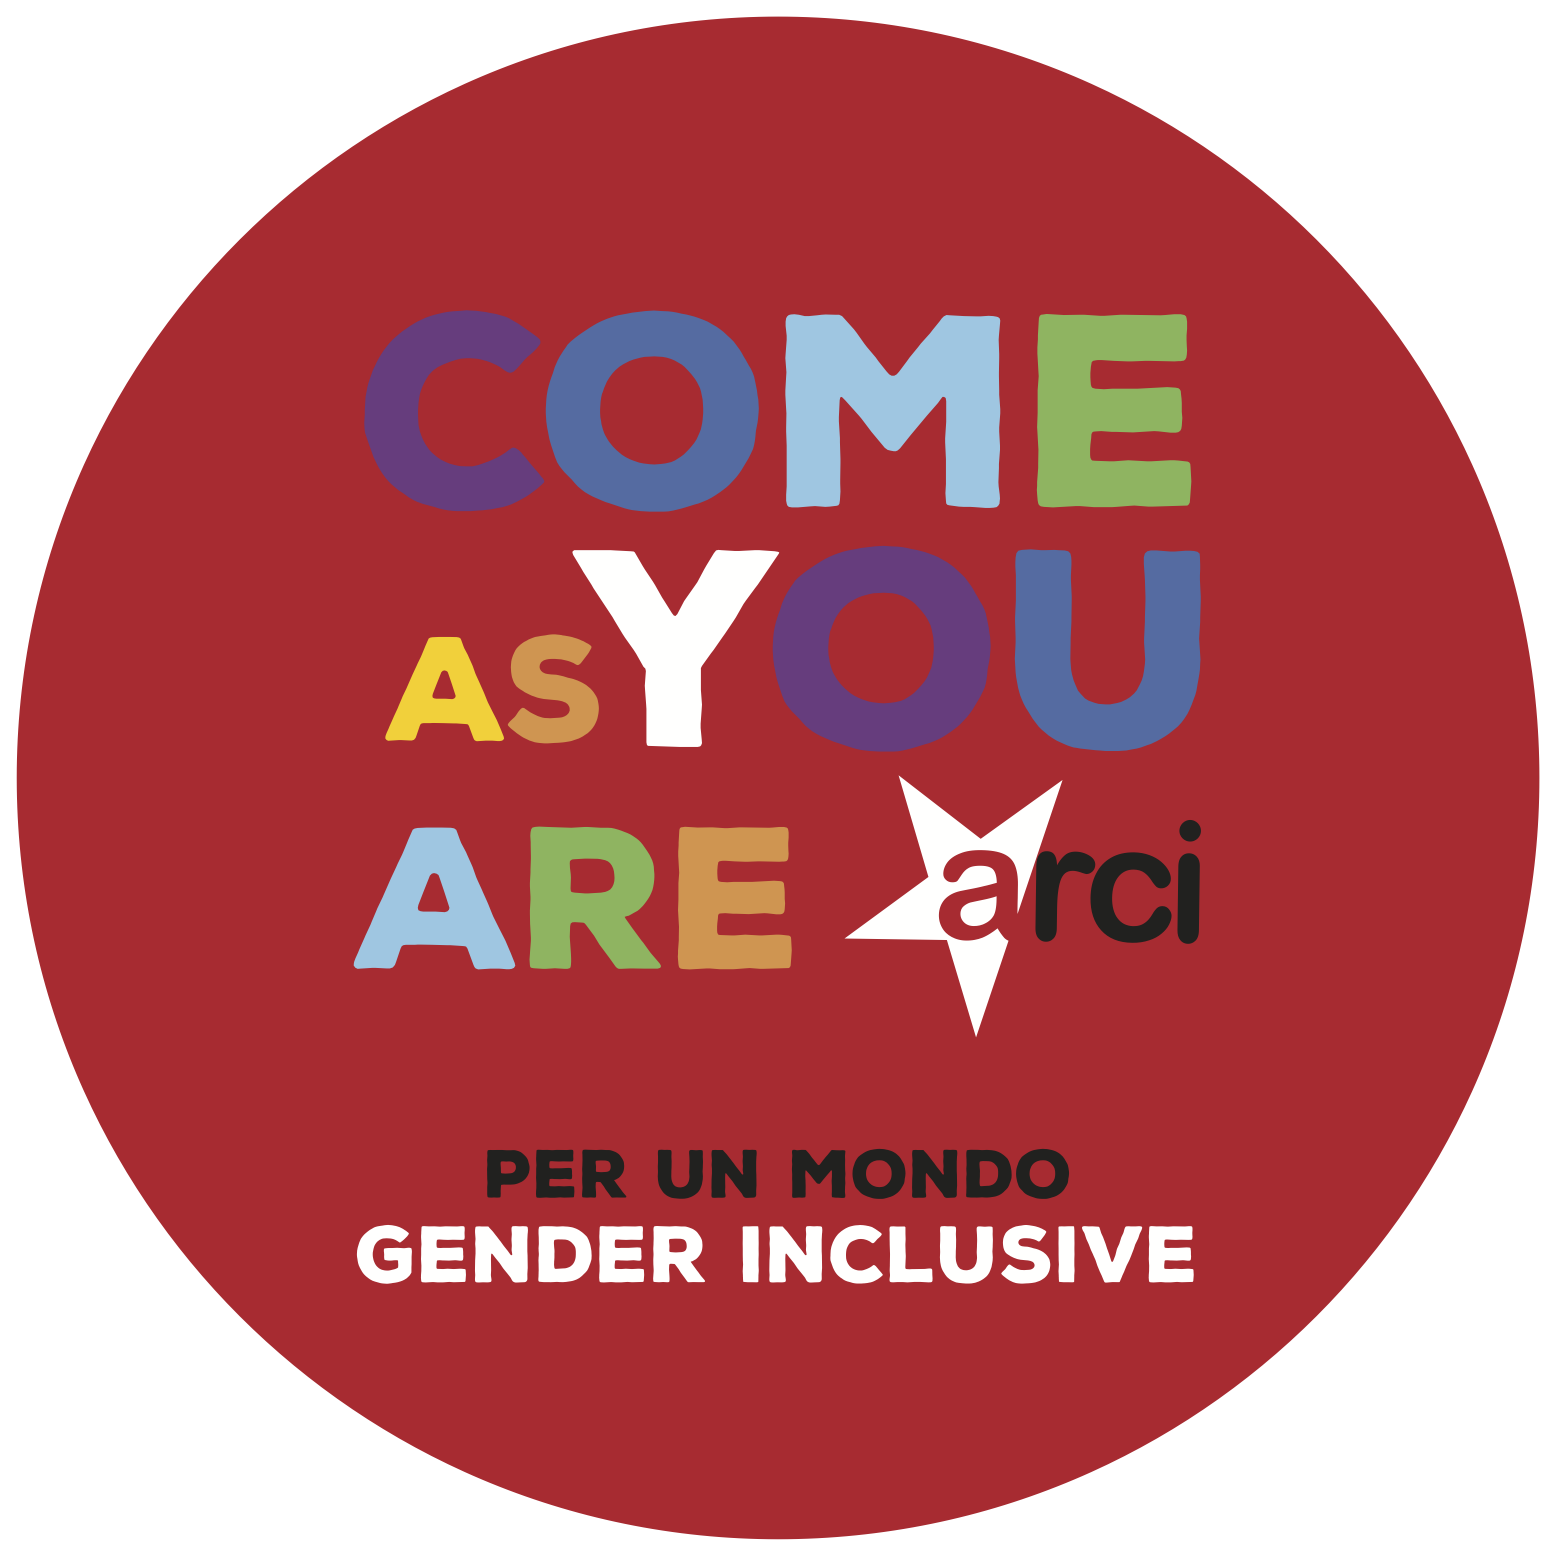 COME AS YOU ARE. La campagna Arci per un mondo gender INCLUSIVE